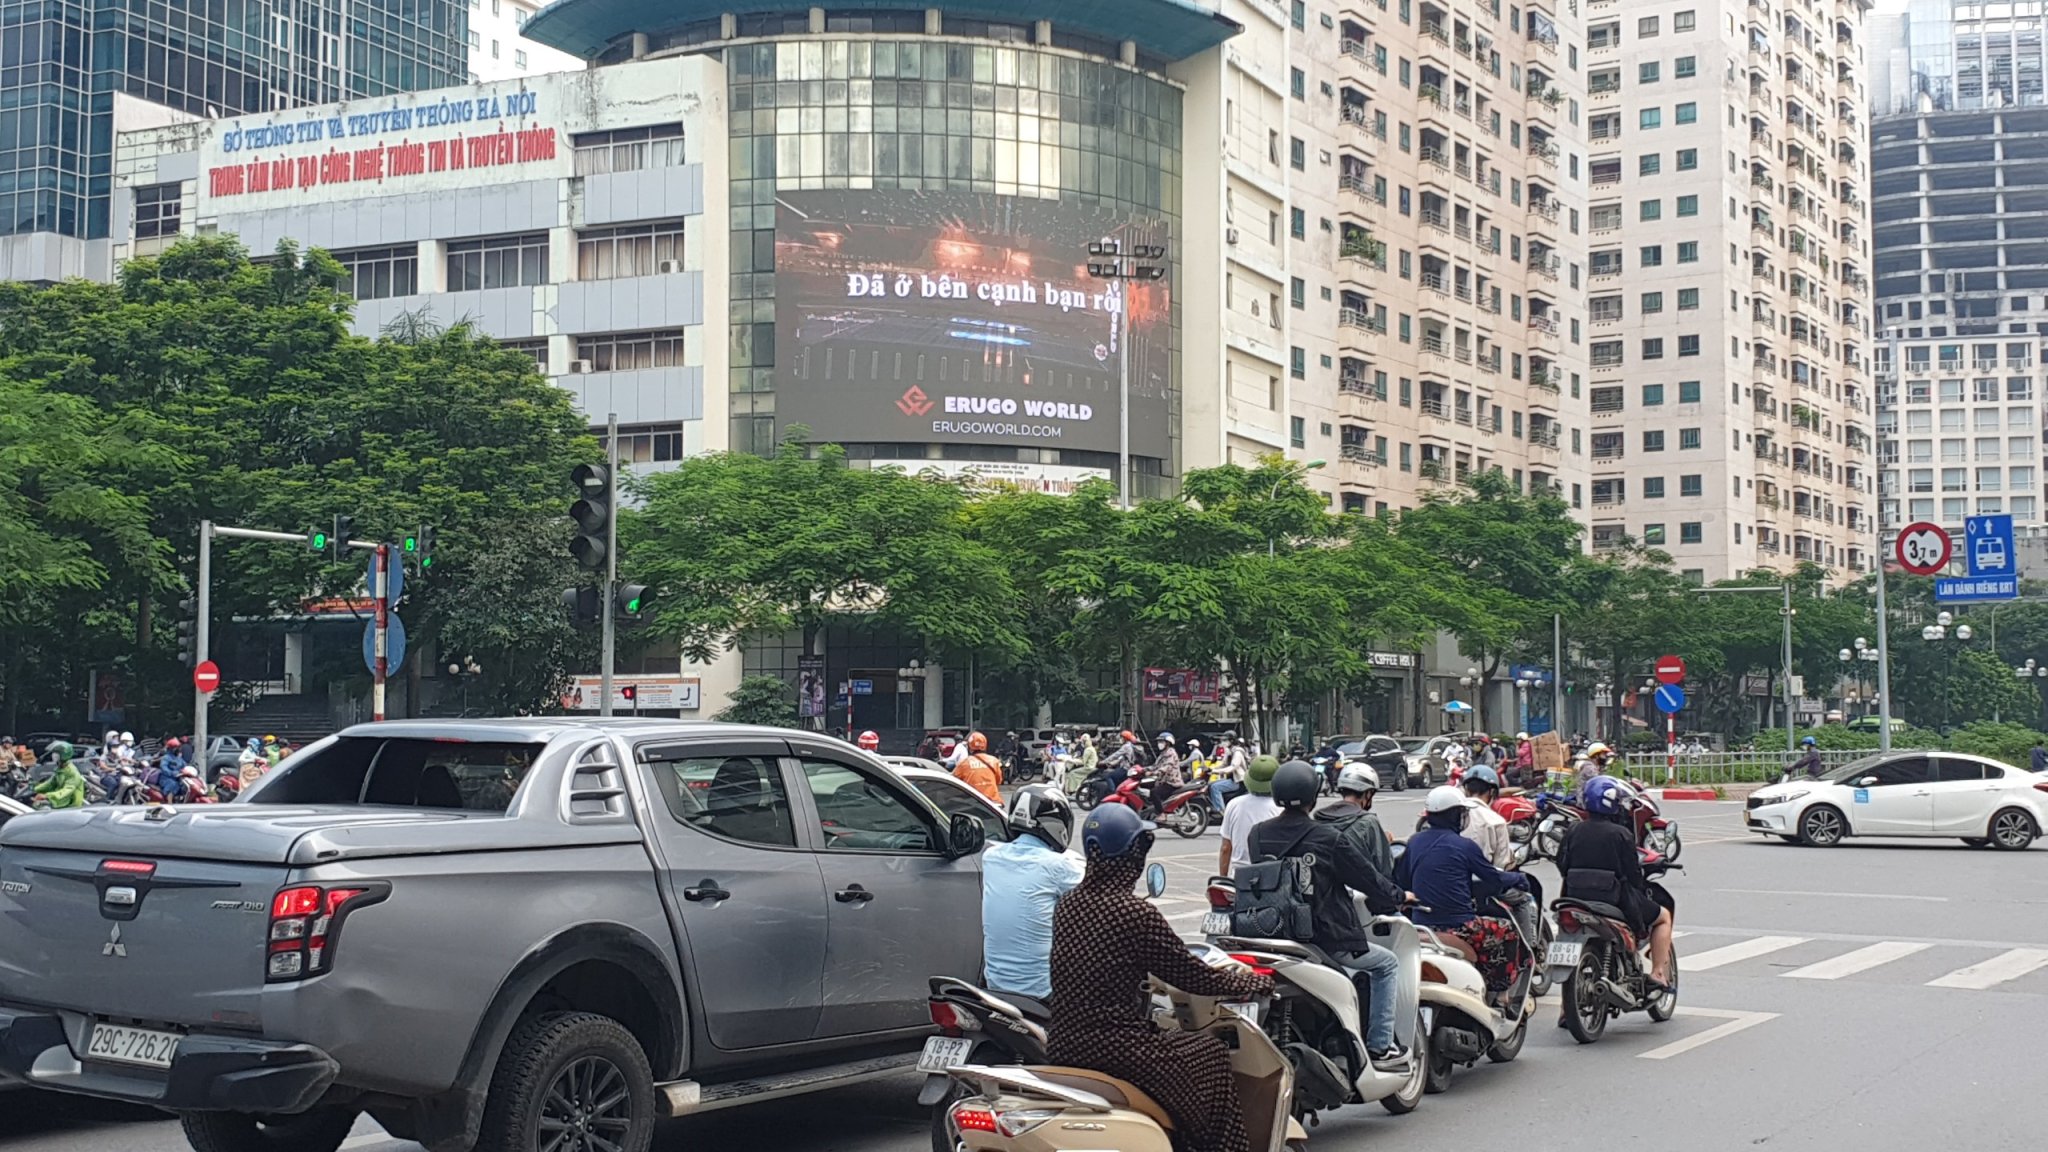 Quảng cáo màn hình led tại ngã 4 Lê Văn Lương Hoàng Đạo Thúy